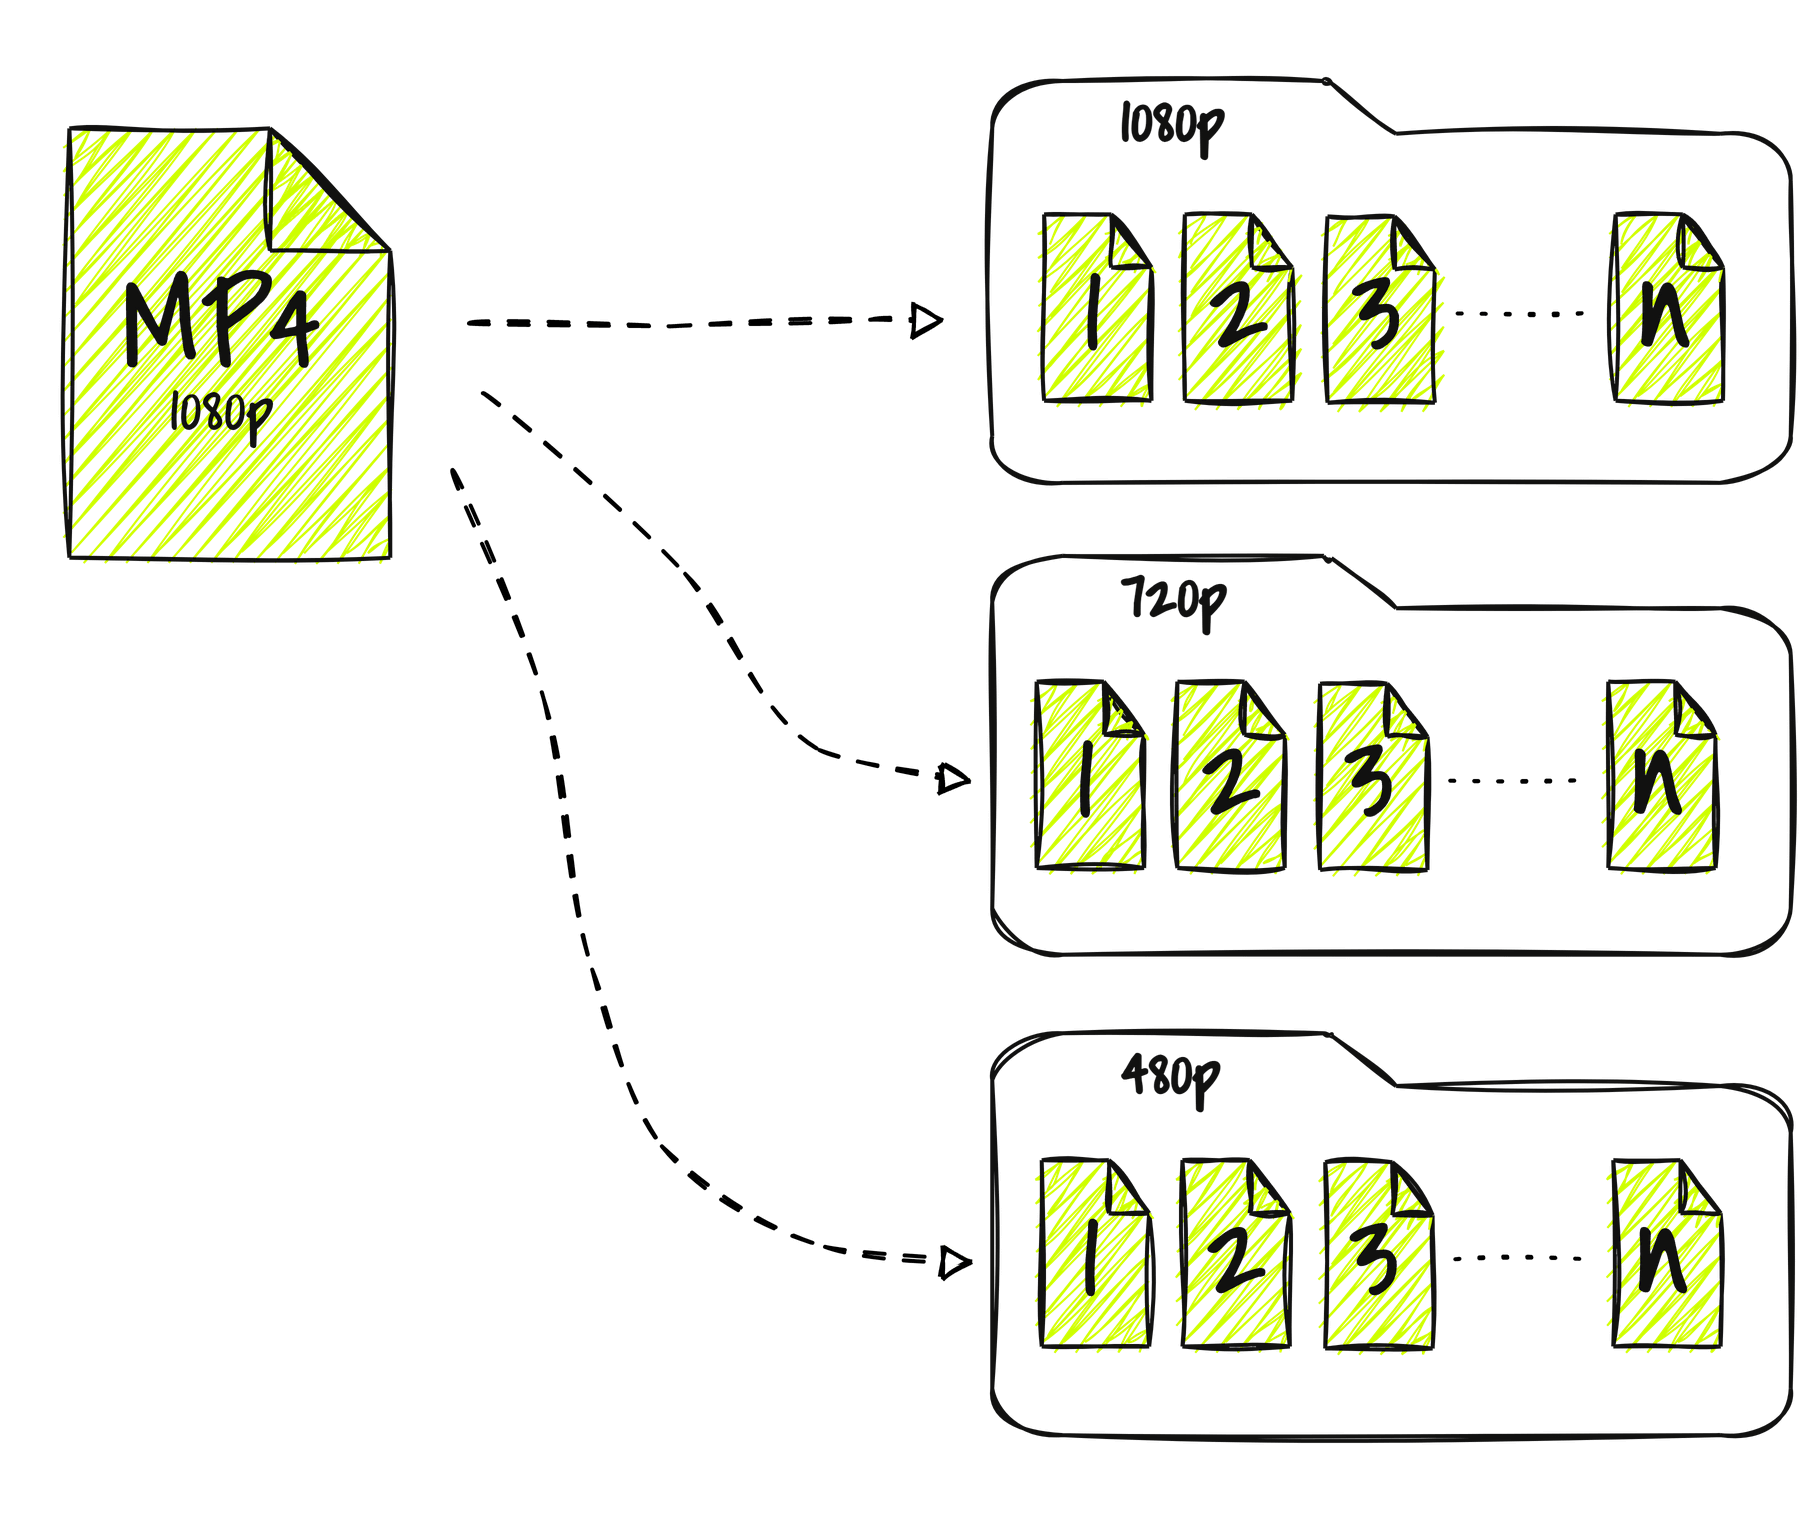 Imagem com diagrama mostrando o processo de transcoding transformando um arquivo MP4 em vários pequenos arquivos